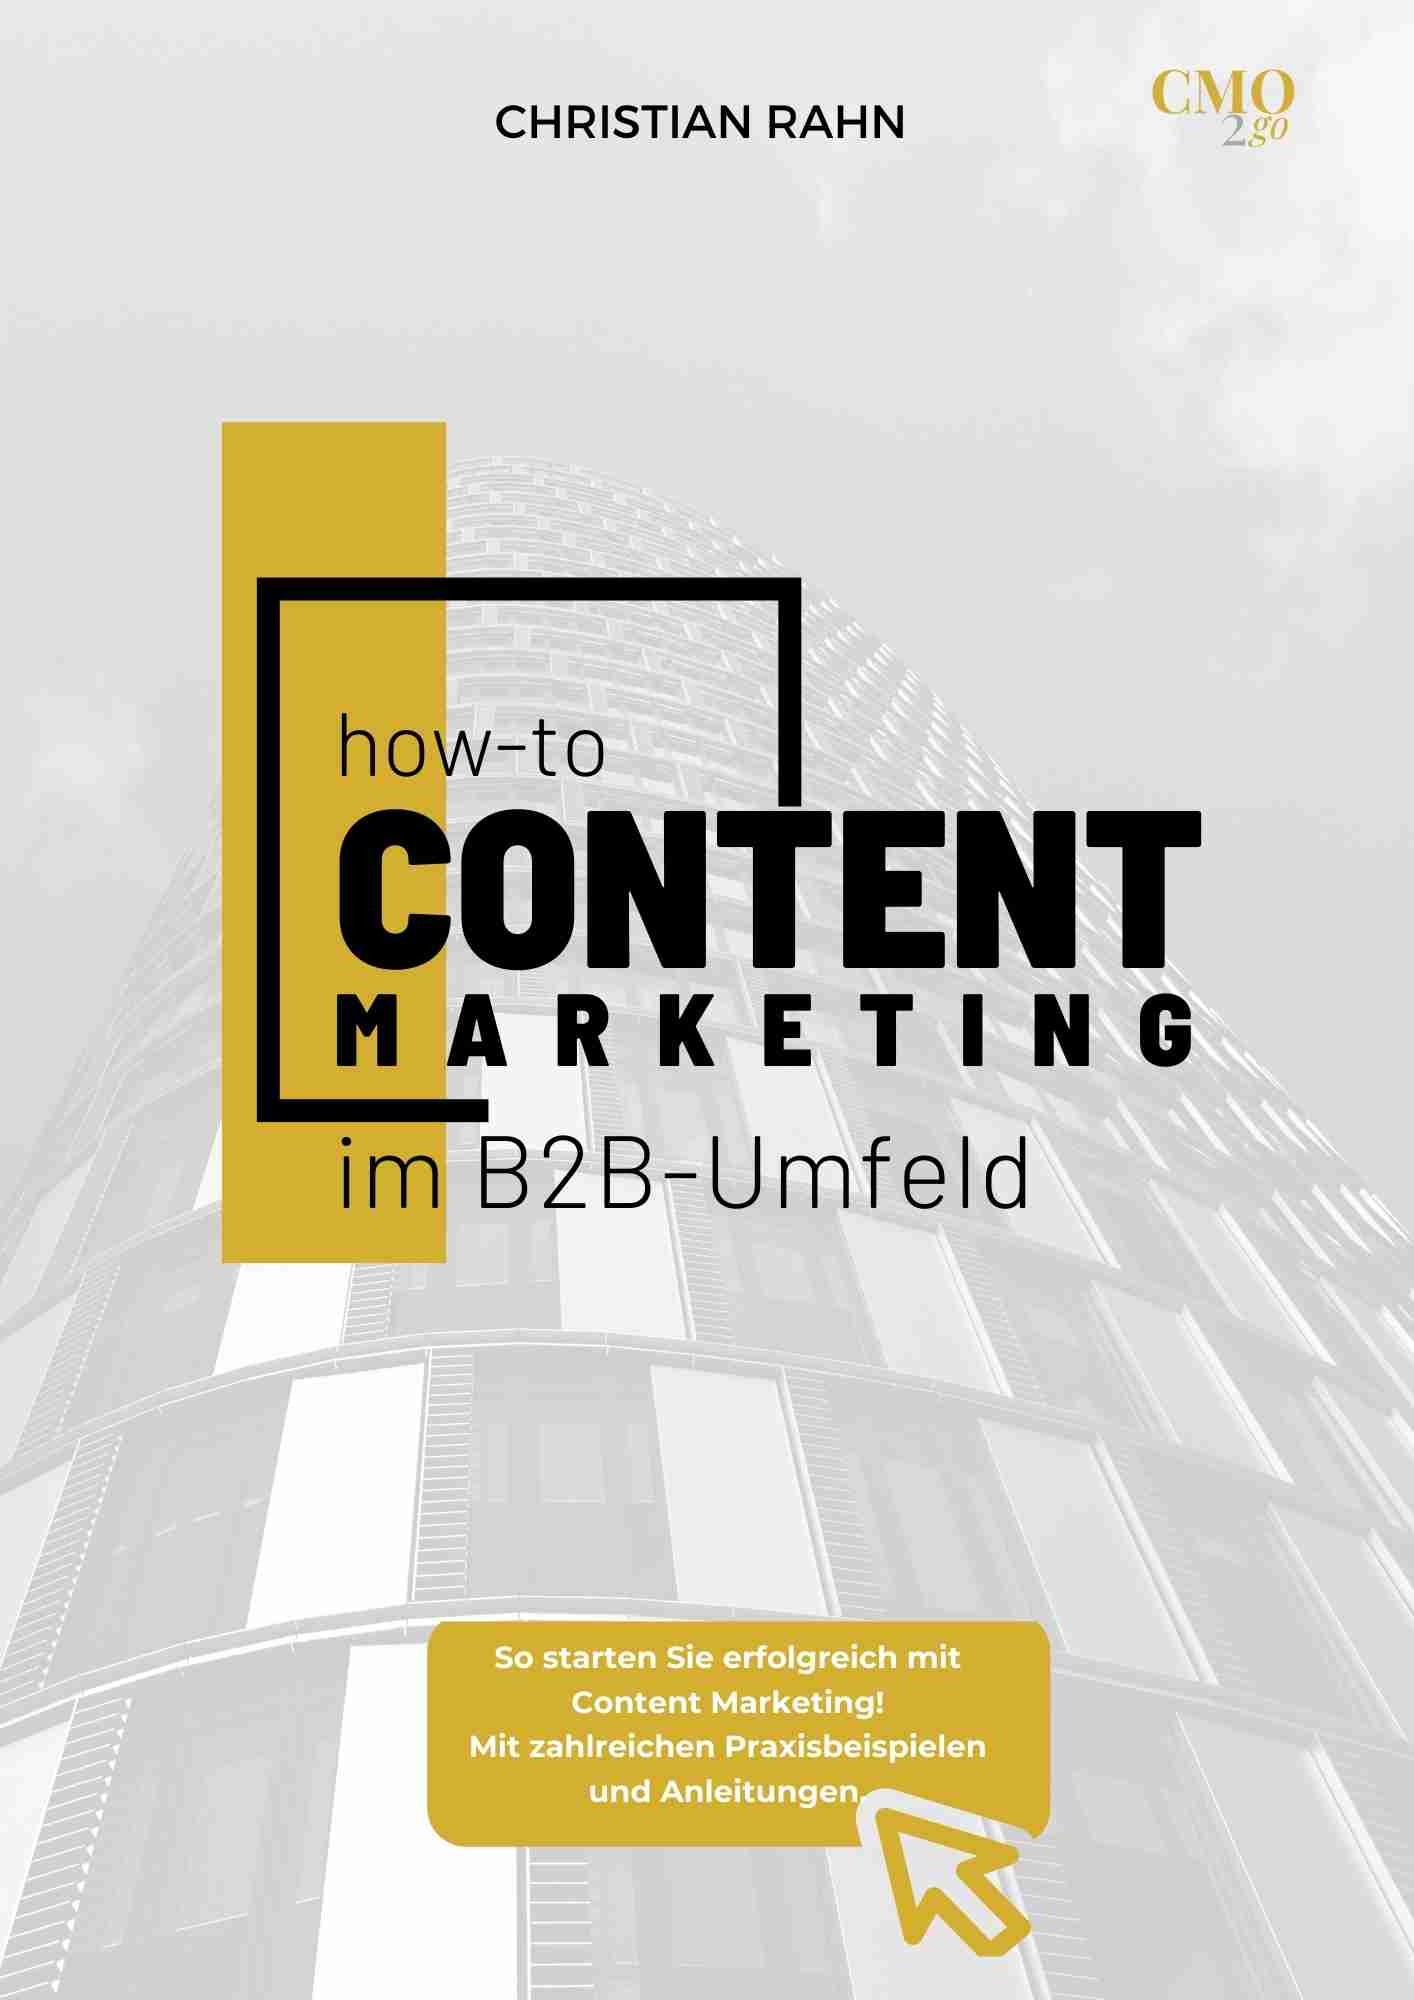 Kostenfreies eBook zum Content Marketing im B2b-Marketing von Christian Rahn, dem CMO2go